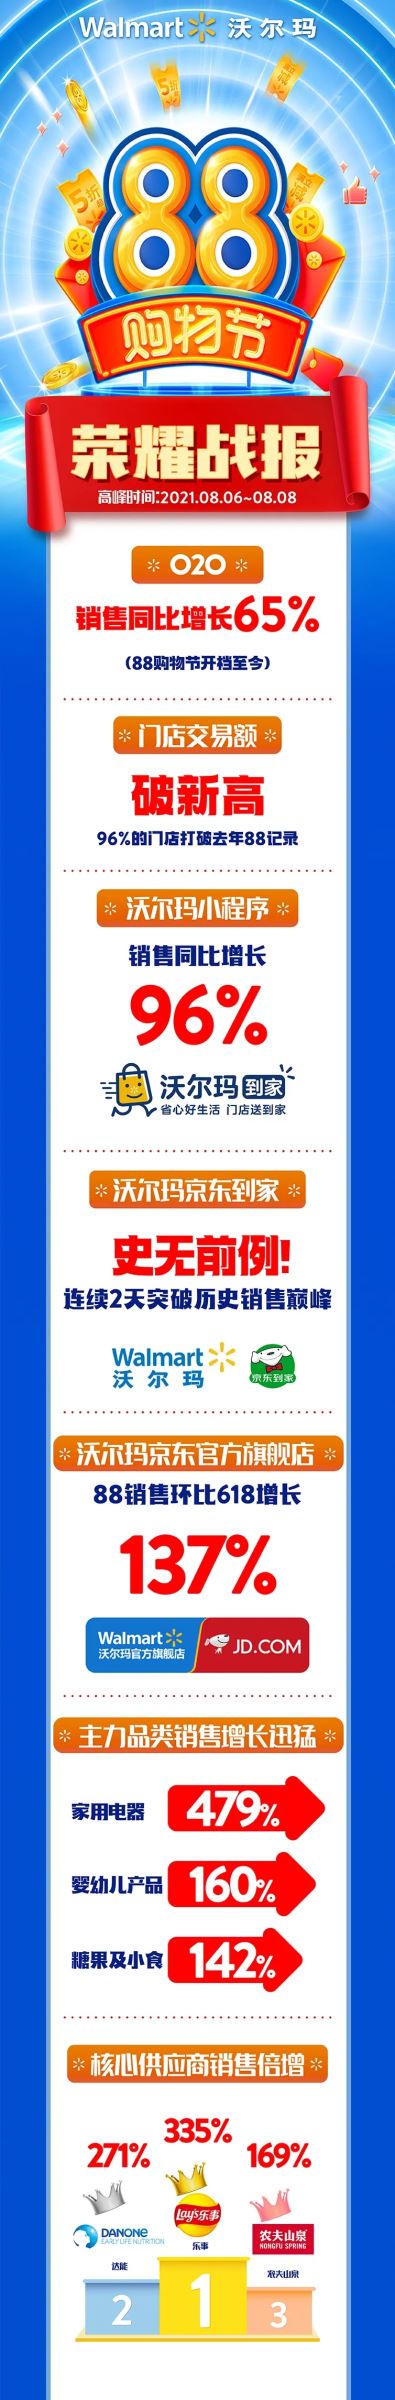 沃尔玛88购物节战报：96%大卖场门店交易额打破去年88记录